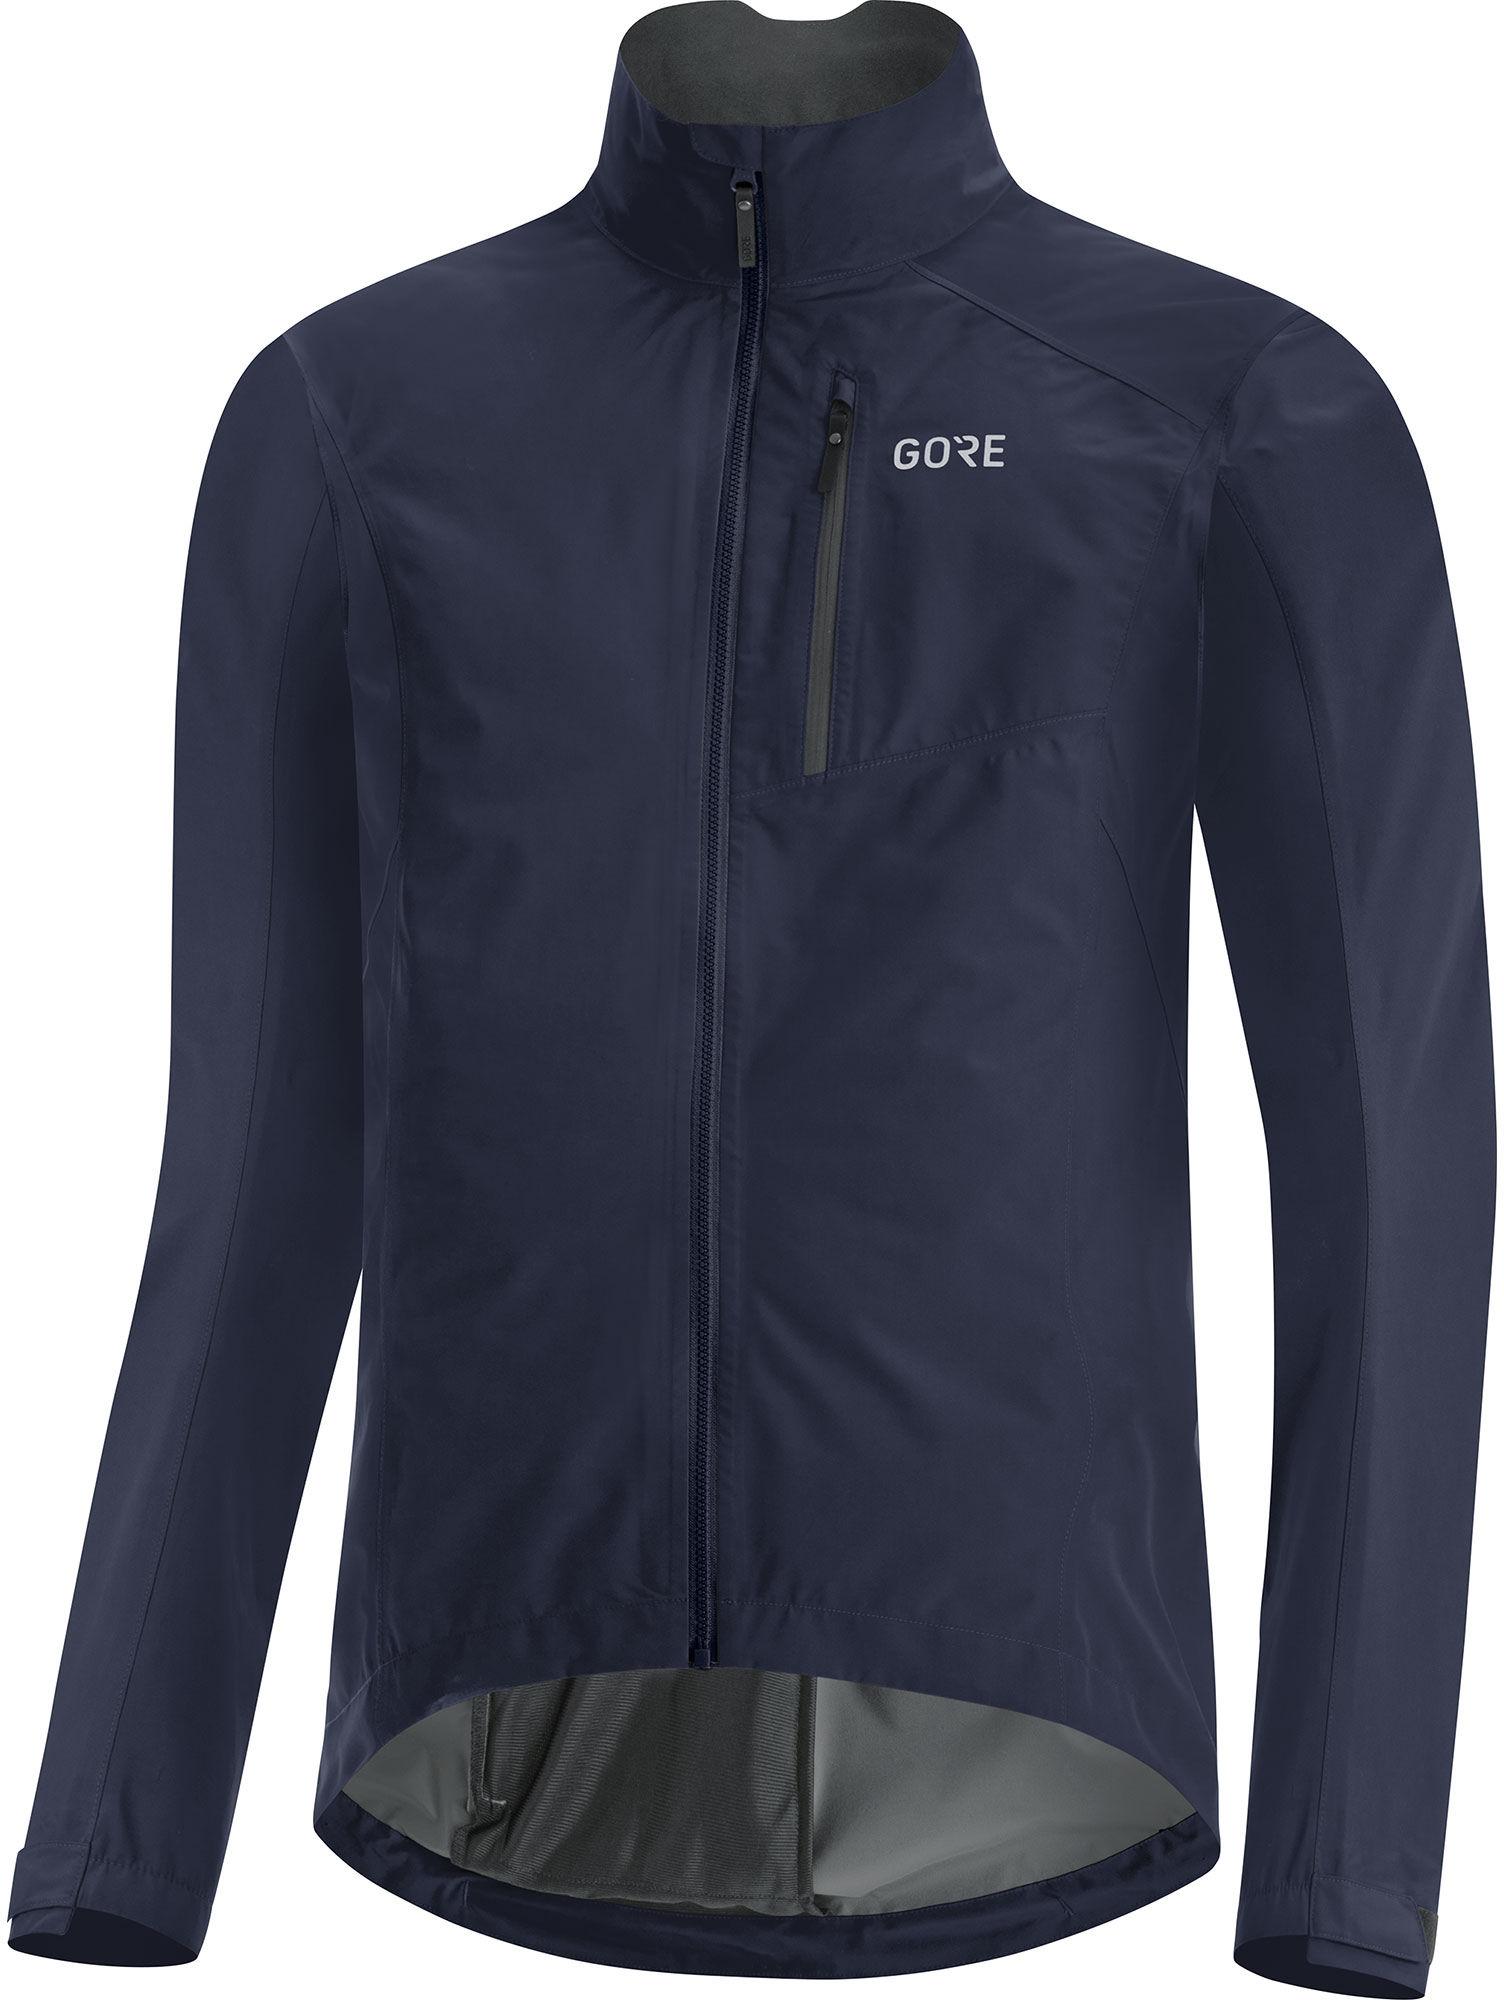 Gorewear Gtx Paclite Jacket - Orbit Blue